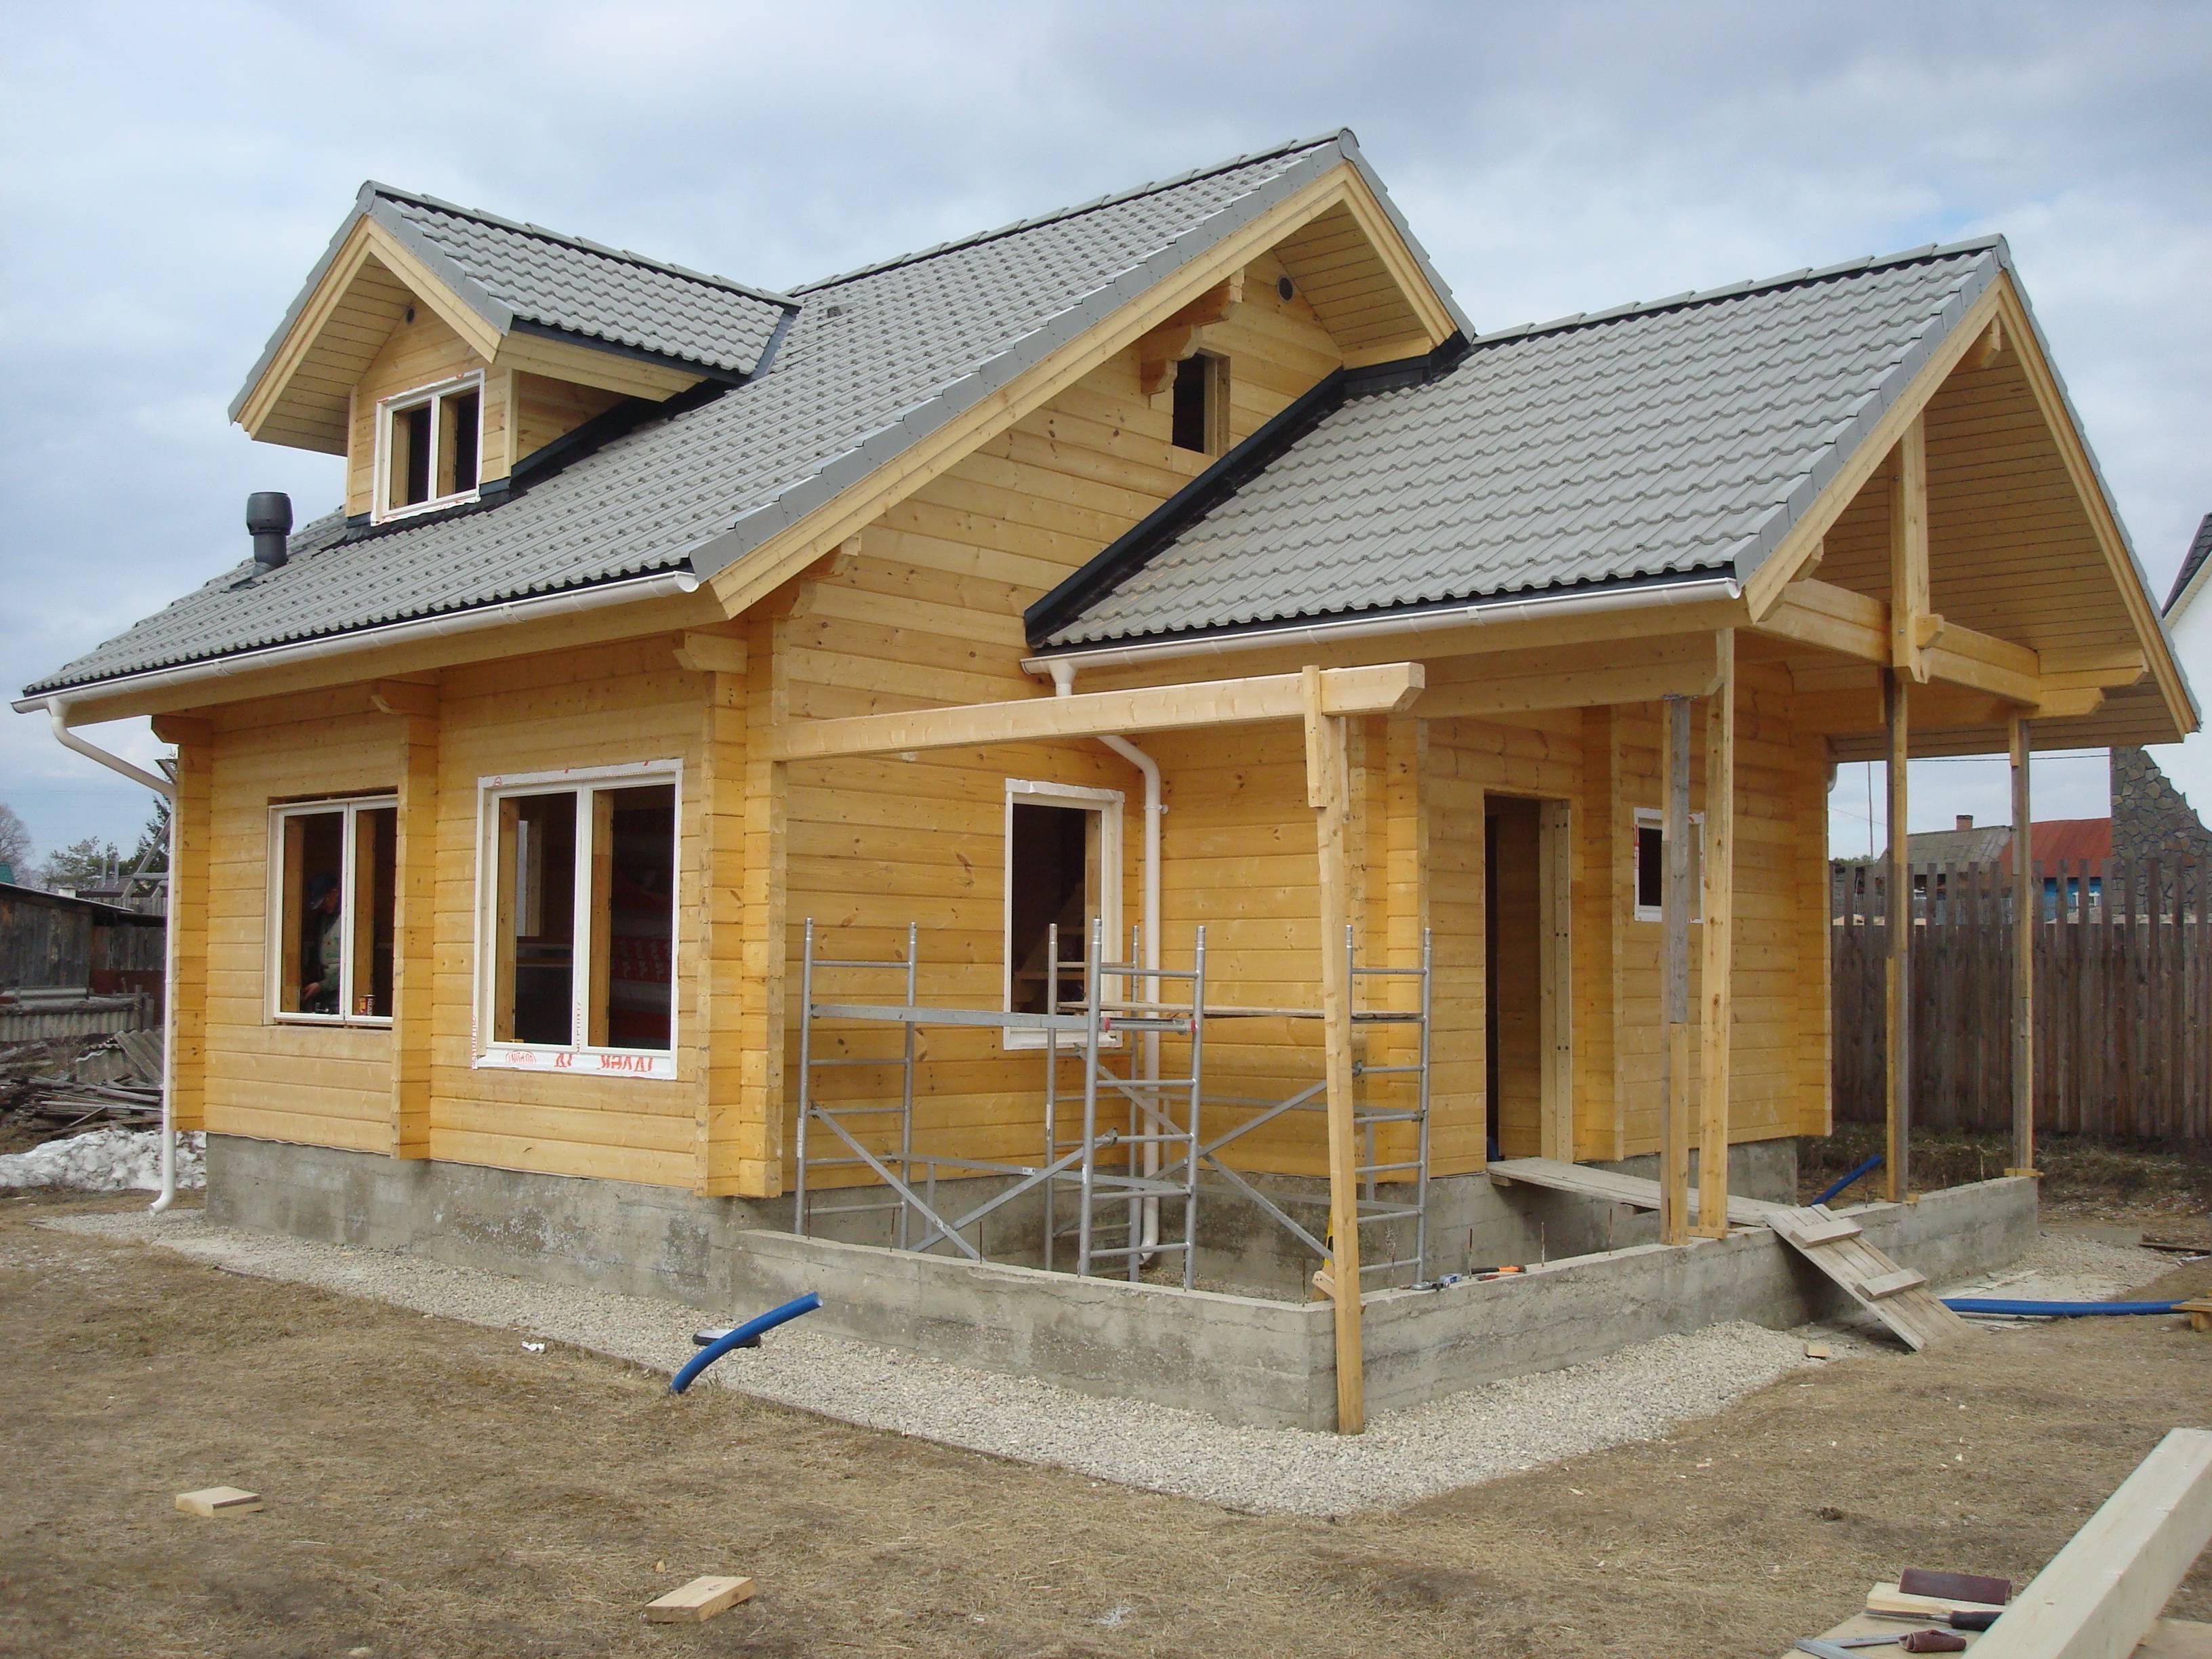 Этапы строительства дома – от выбора участка до отделочных работ